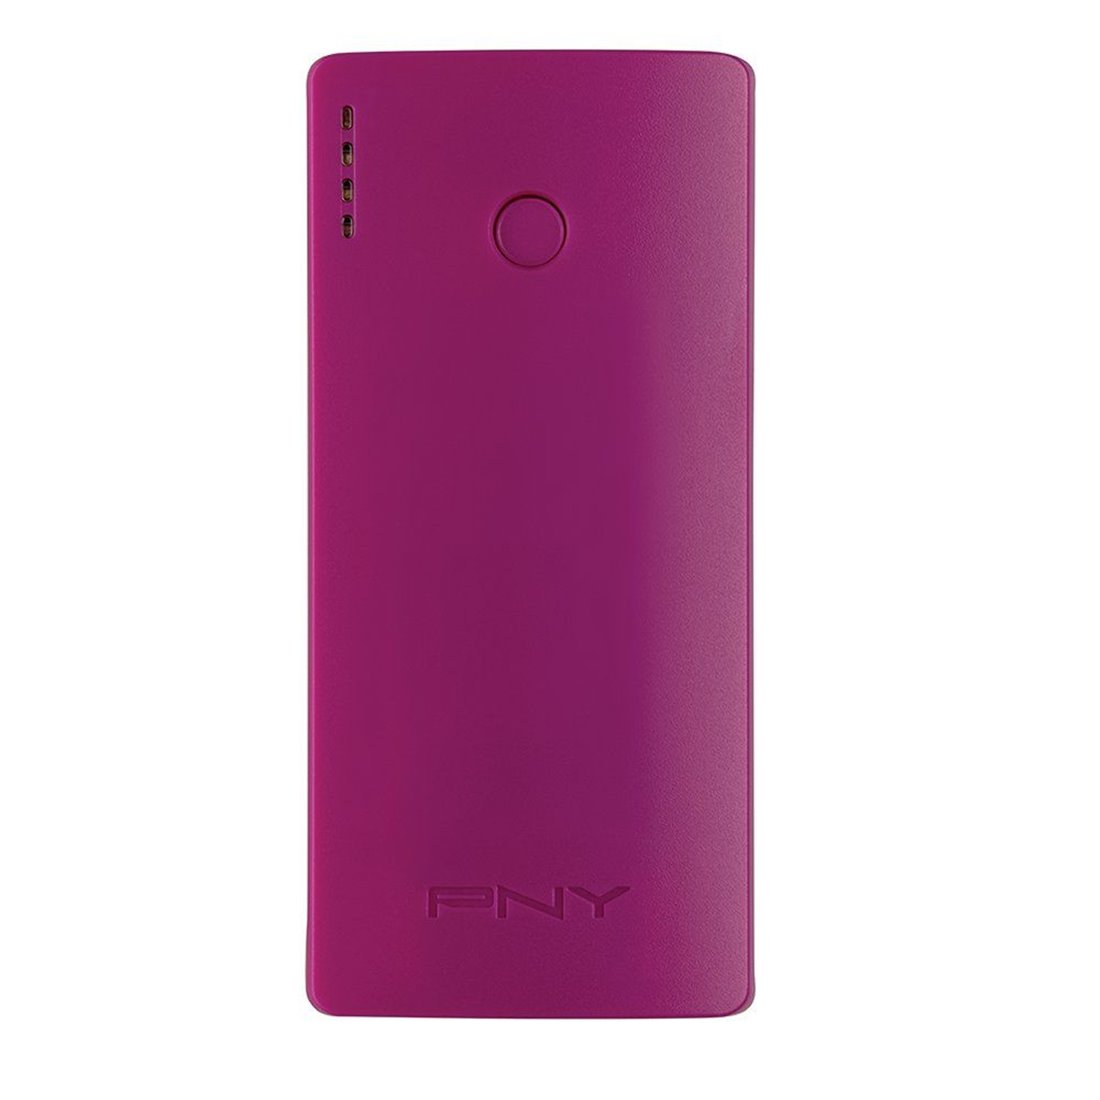 PNY Curve 5200 Batterie externe téléphone portable rechargeable 5200 mAh pour smartphone Violet